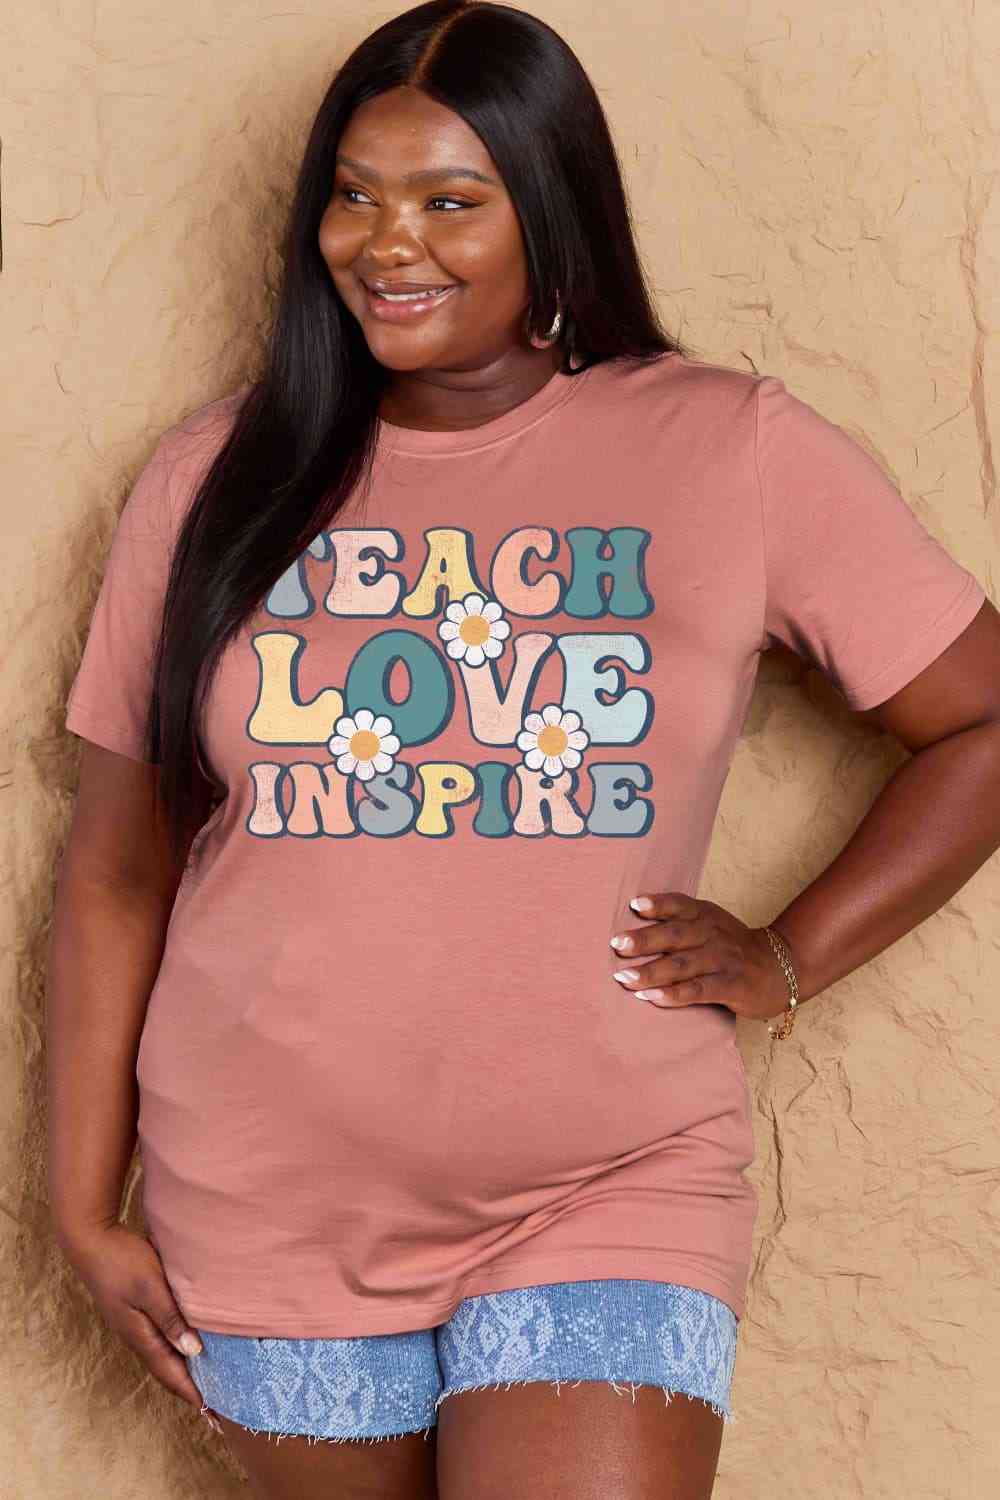 Simply Love T-shirt en coton graphique TEACH LOVE INSPIRE pleine taille